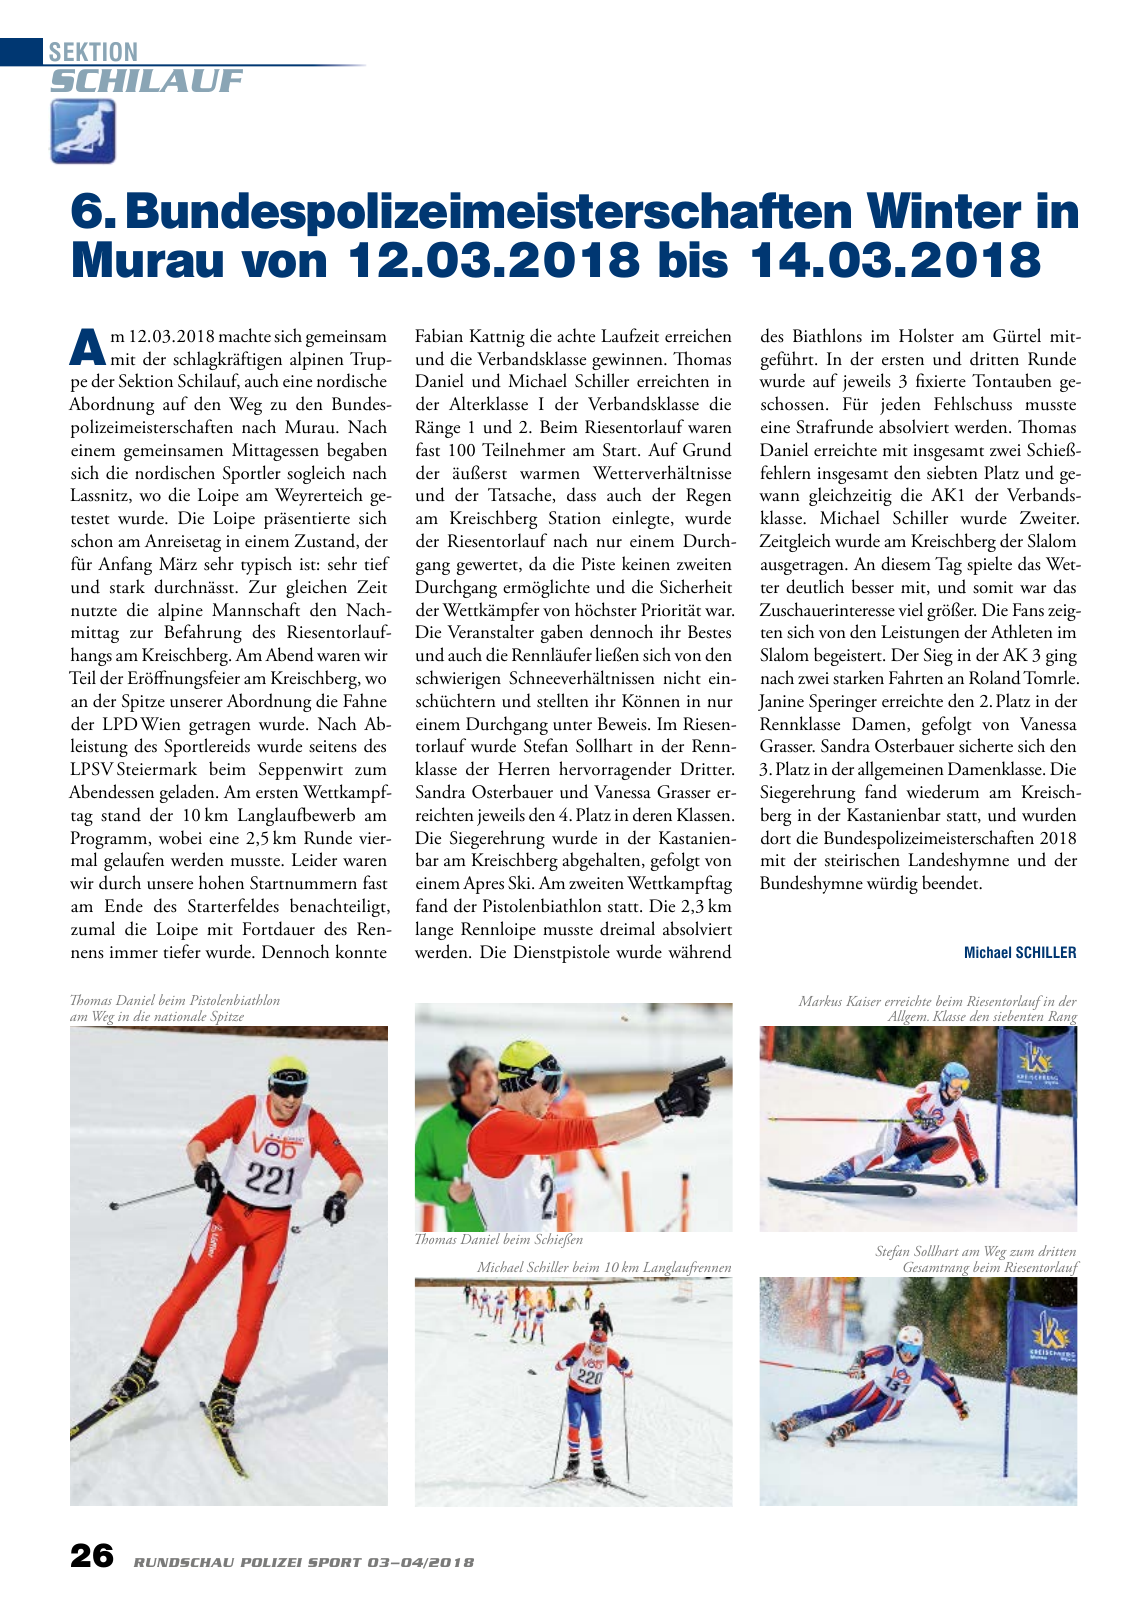 Vorschau Rundschau Polizei Sport 03-04/2018 Seite 26